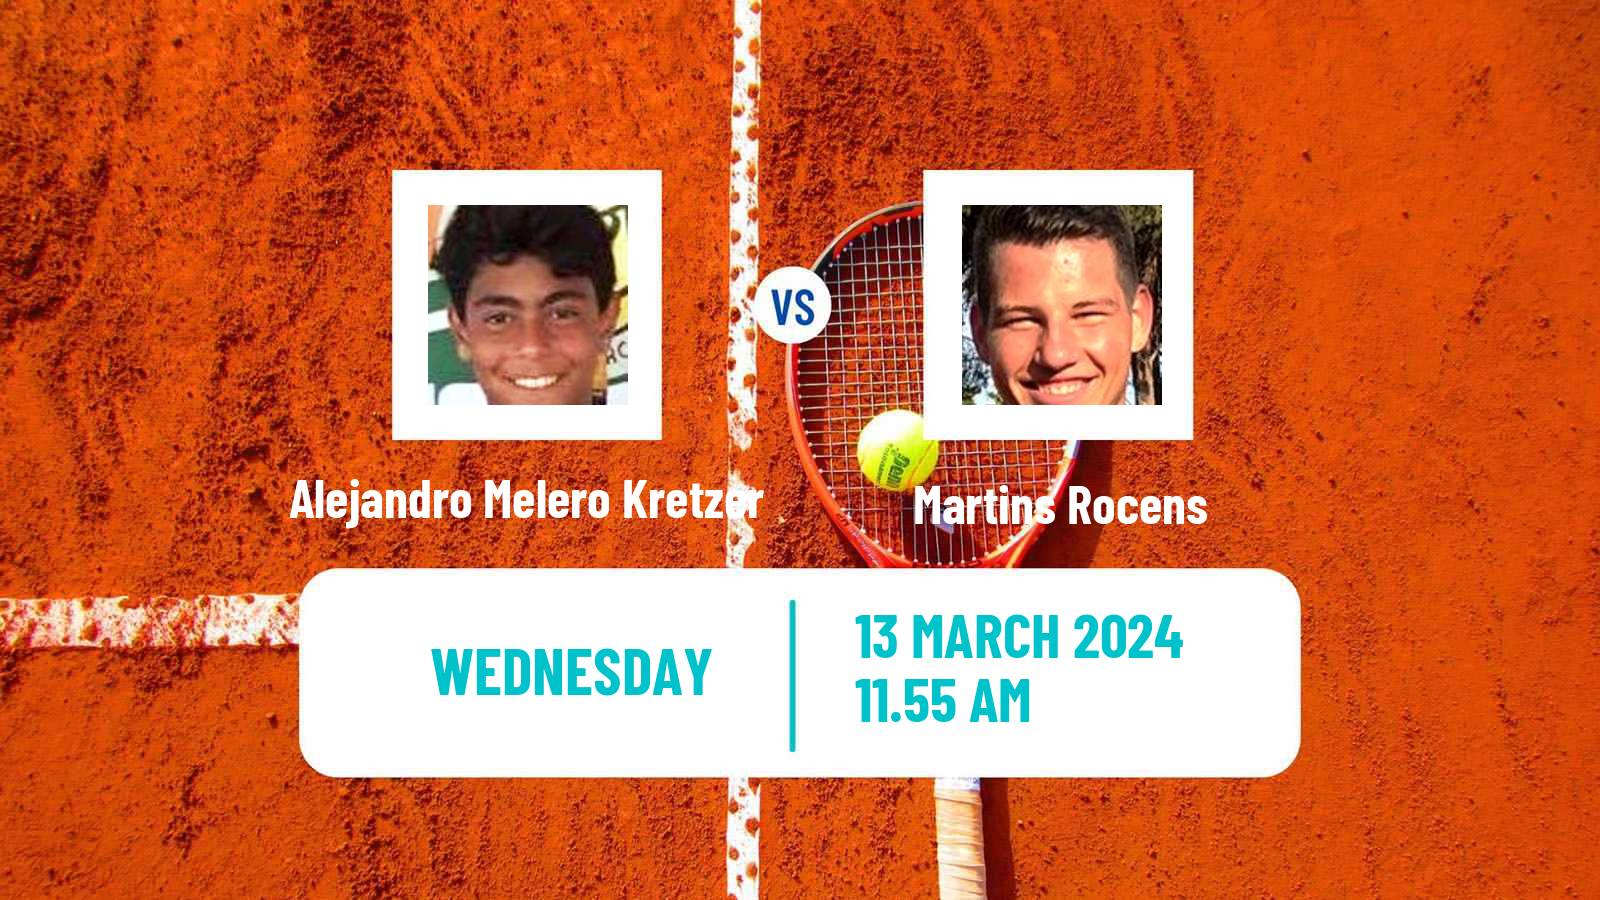 Tennis ITF M15 Les Franqueses Del Valles Men Alejandro Melero Kretzer - Martins Rocens